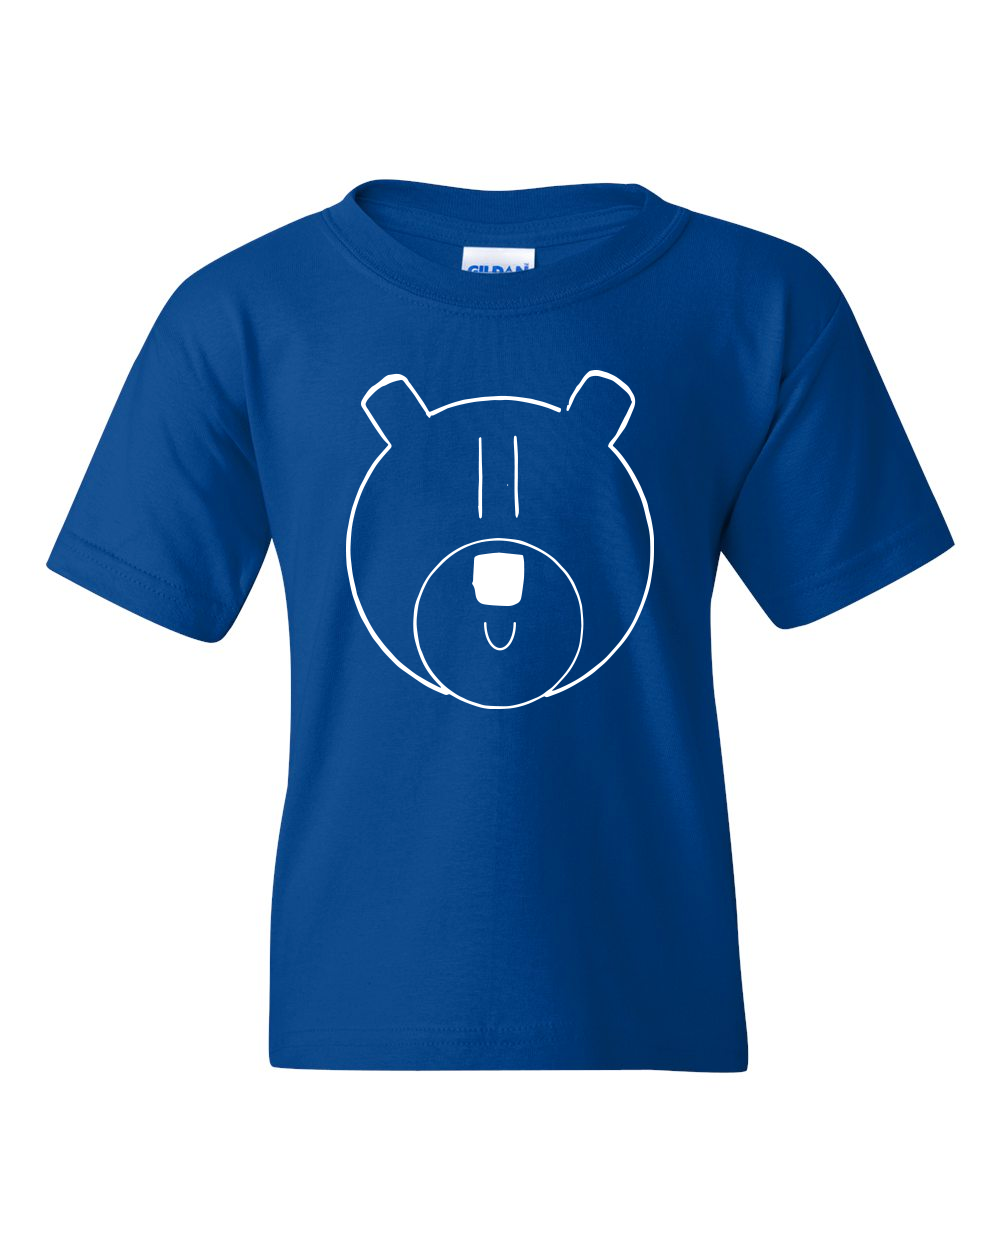 Boys Bear Logo T-shirt